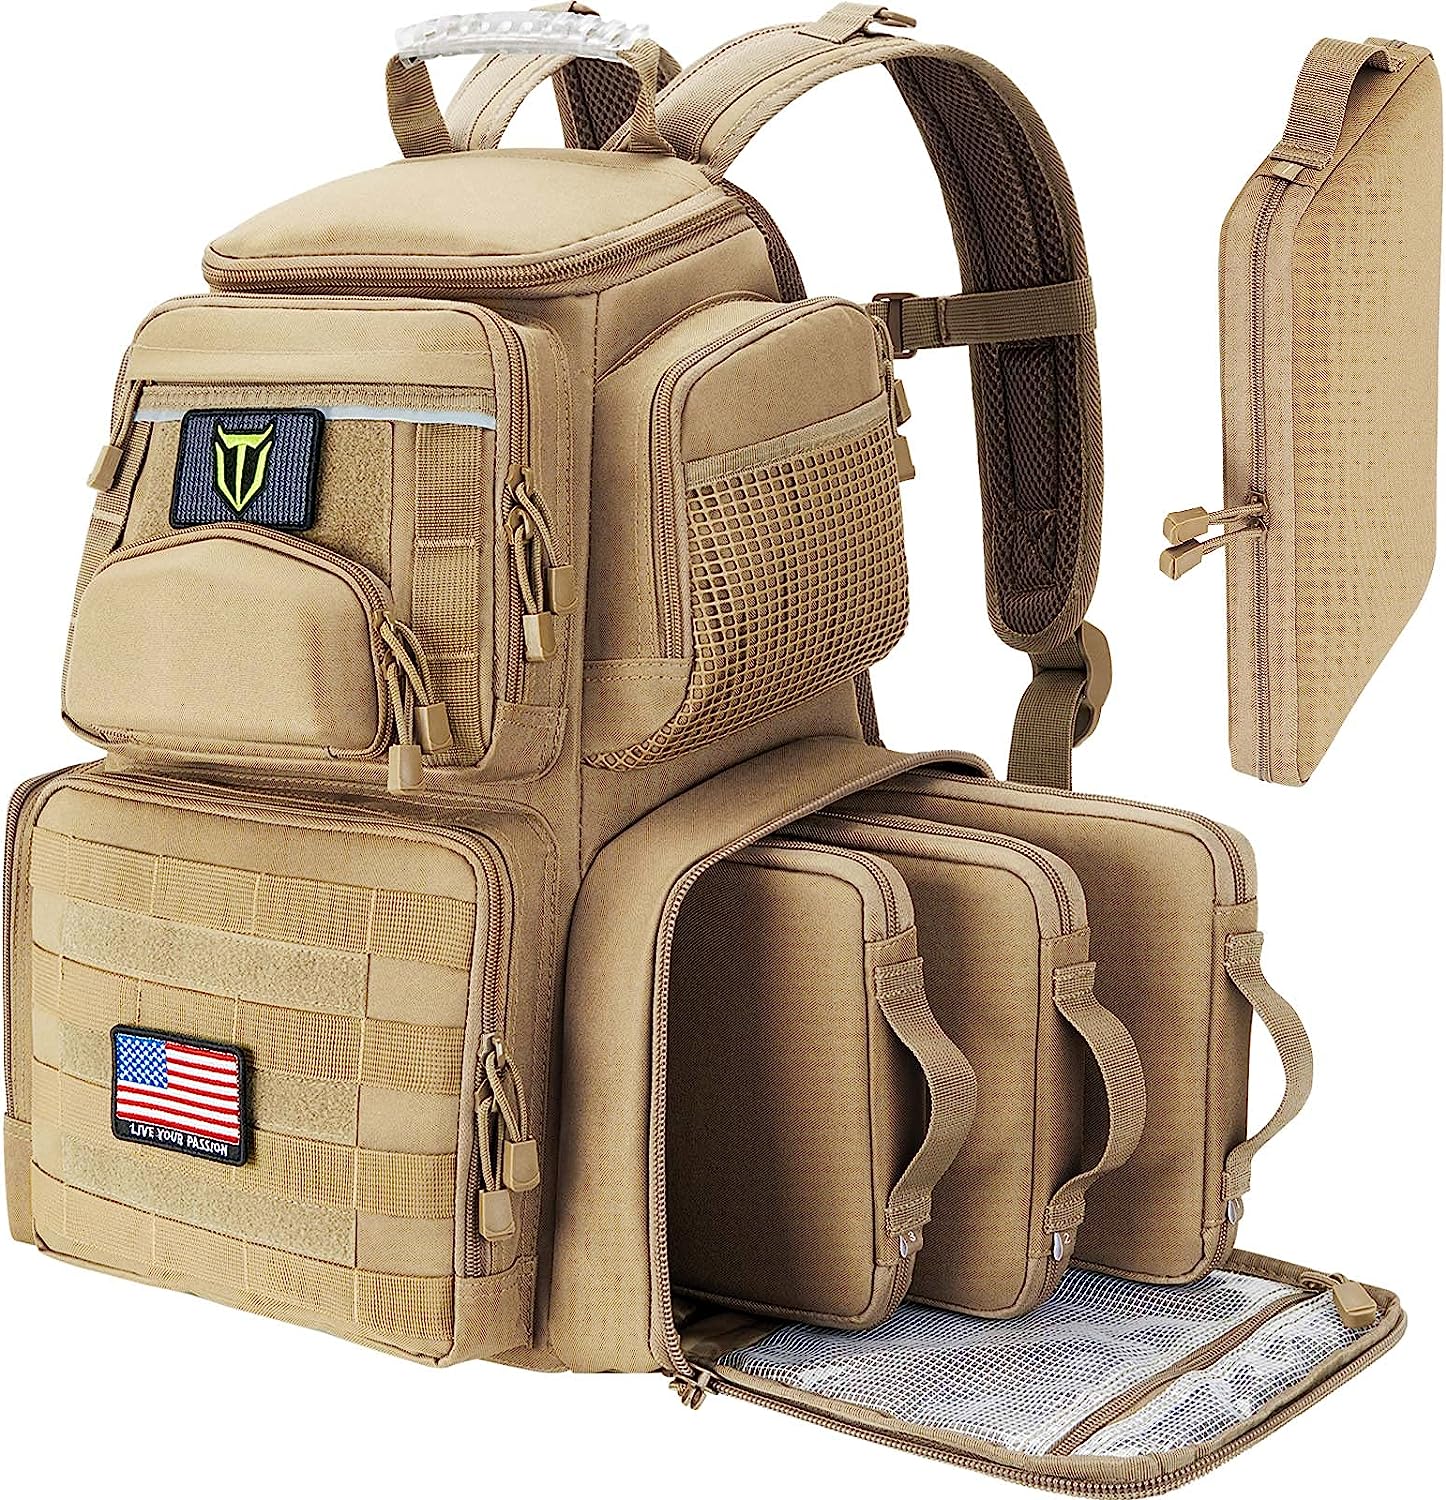 Tactical Gun Bag WholeSale - Price List, Bulk Buy at